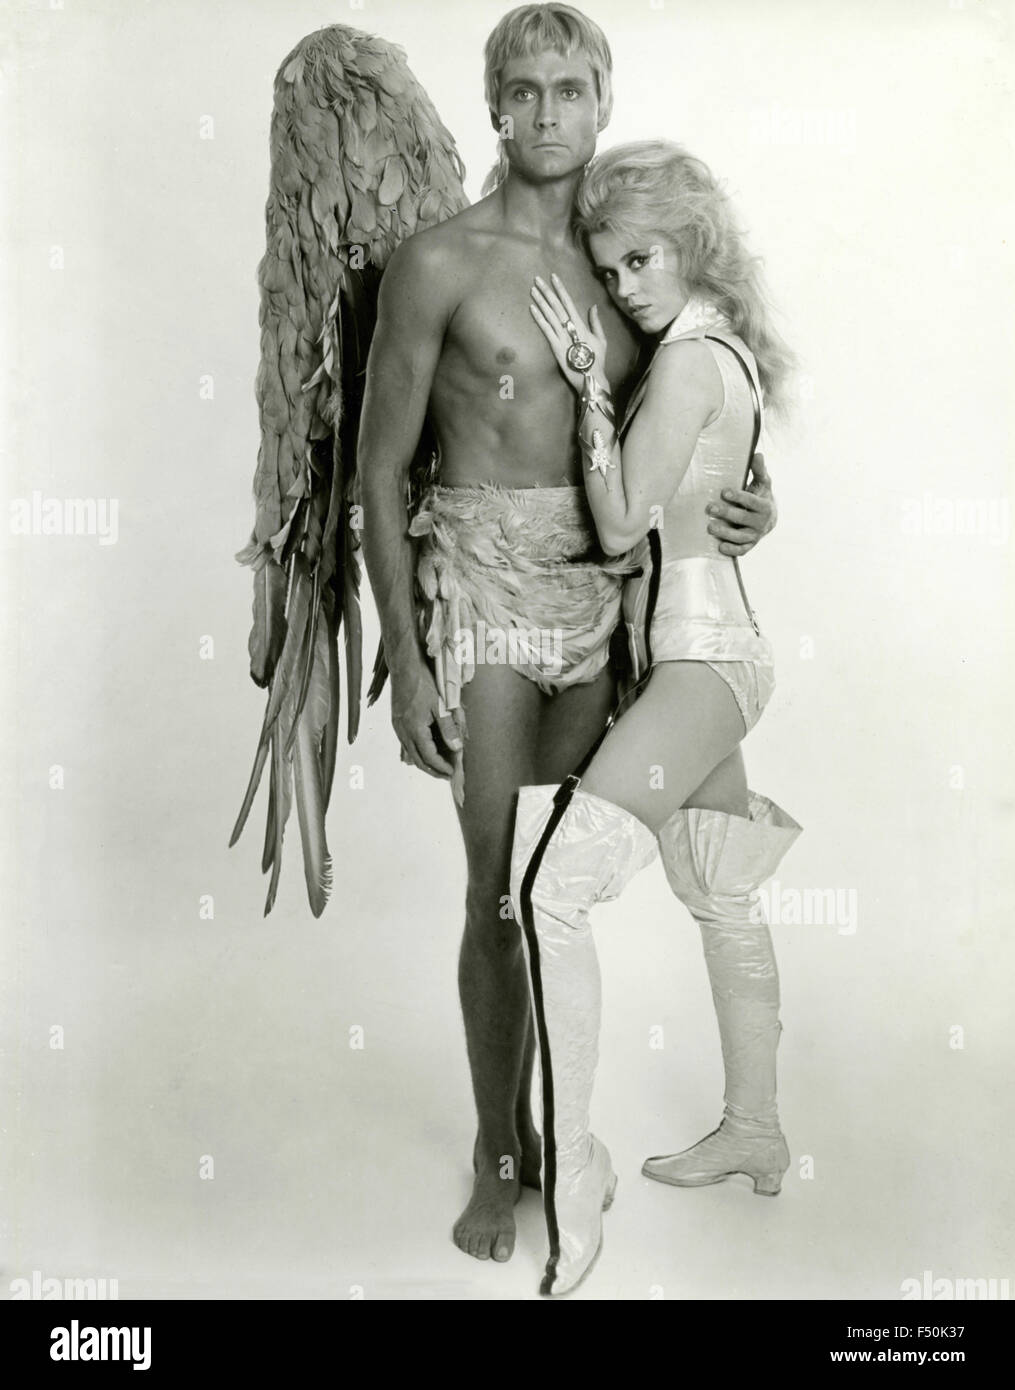 The actors Jane Fonda and John Phillip Law in a scene from the film 'Barbarella', 1968 Stock Photo